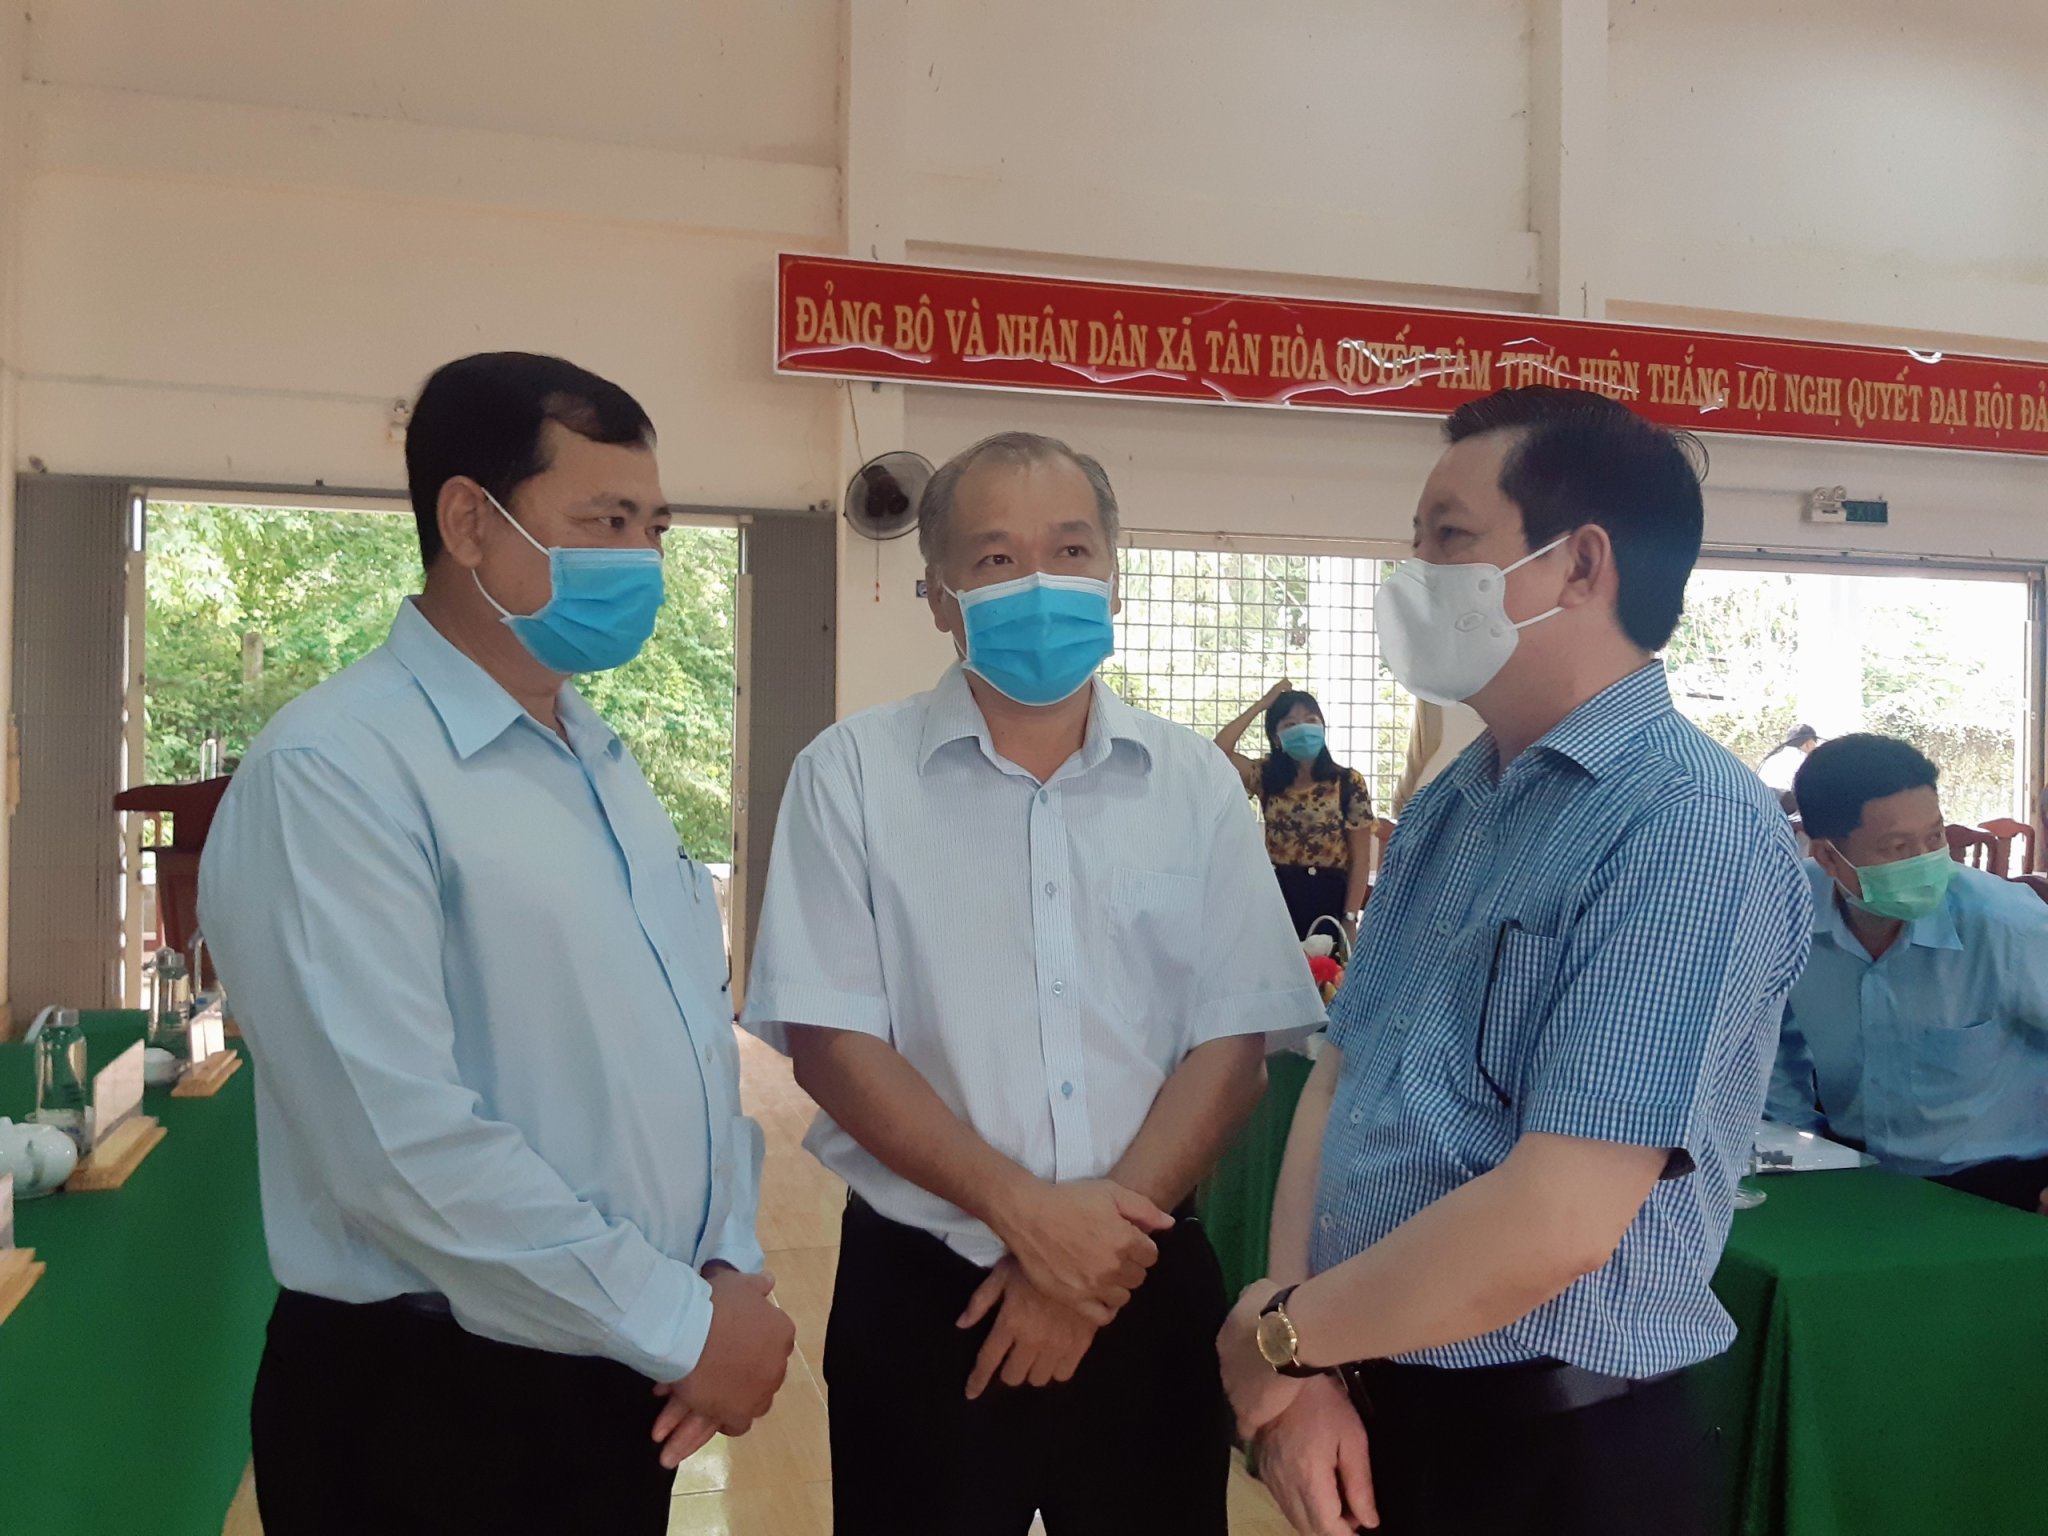 Phó Chủ tịch Thường trực TƯ Hội Nông dân Việt Nam cam kết thực hiện 4 nhiệm vụ trong chương trình hành động - Ảnh 1.